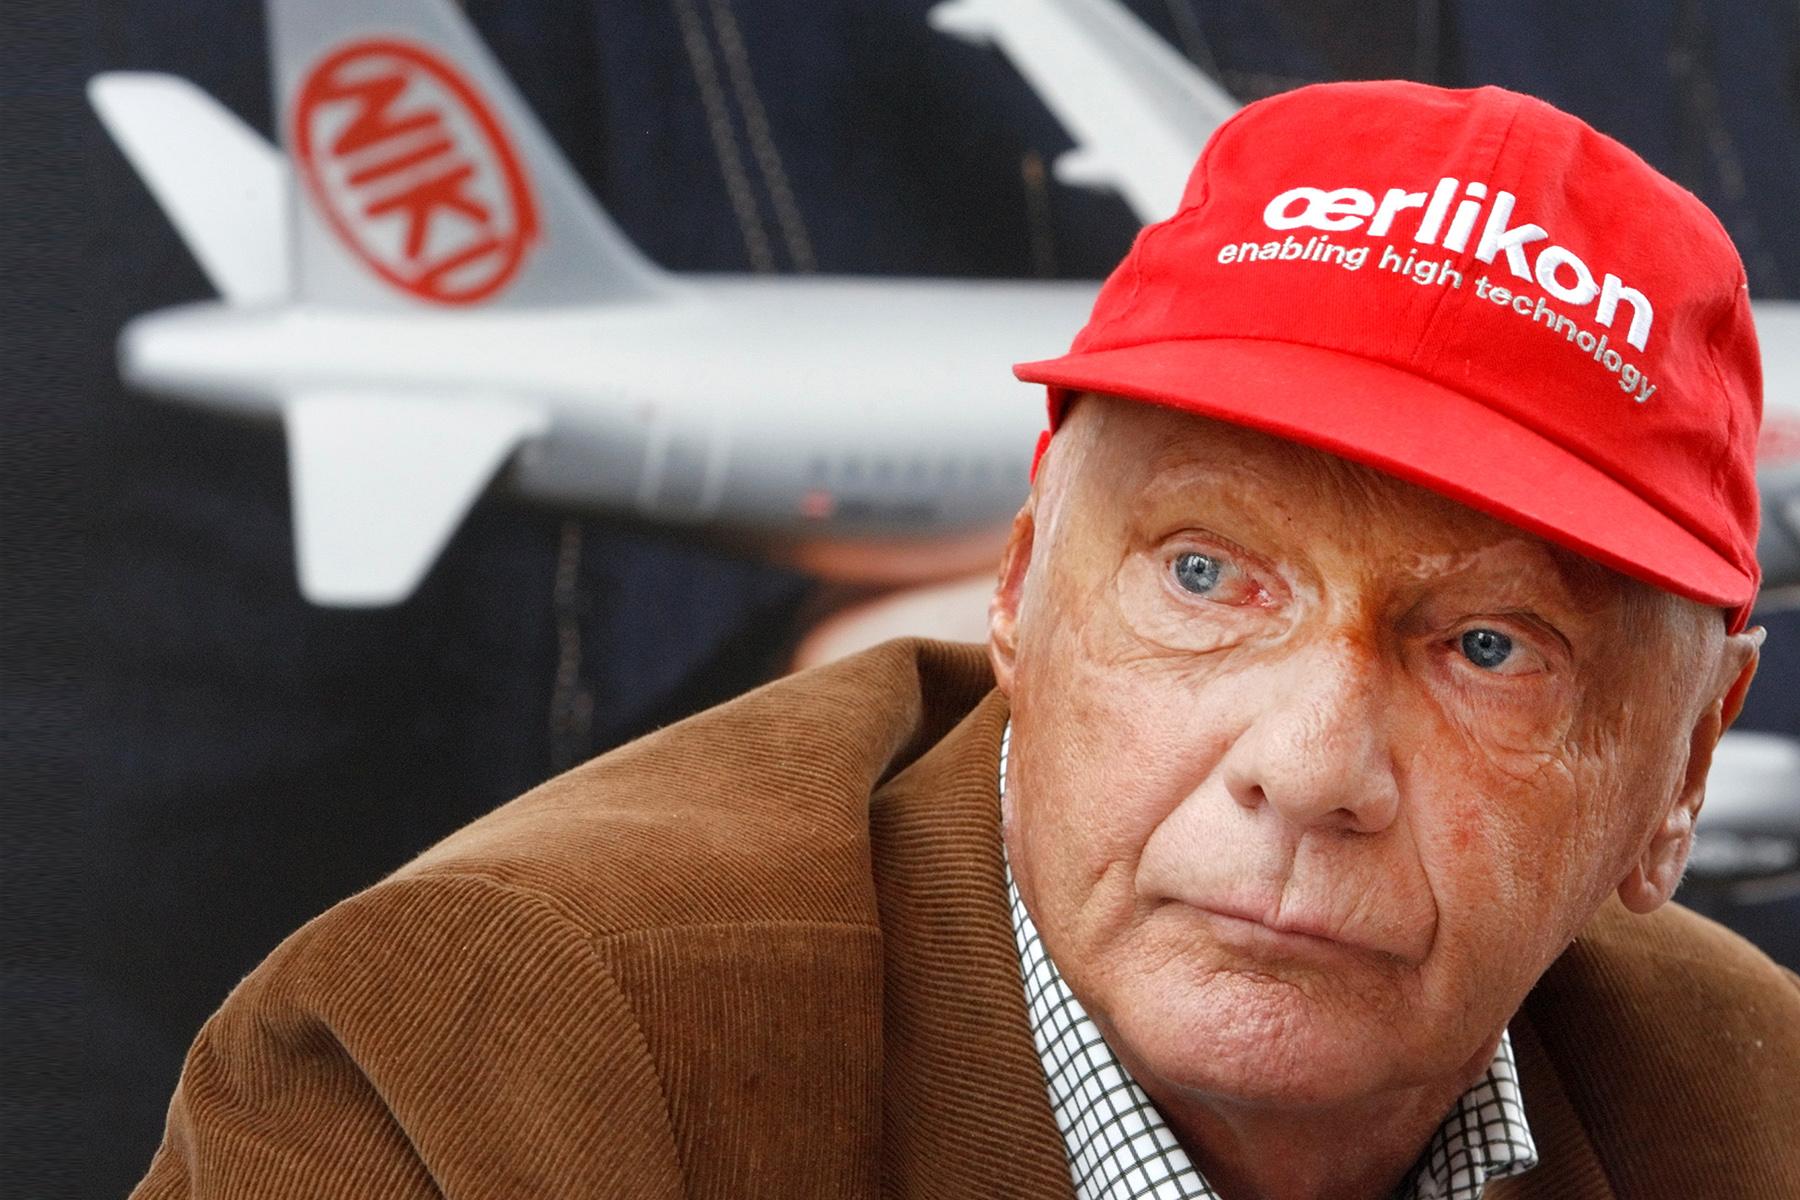 Preminuo Niki Lauda, legendarni vozač Formule 1